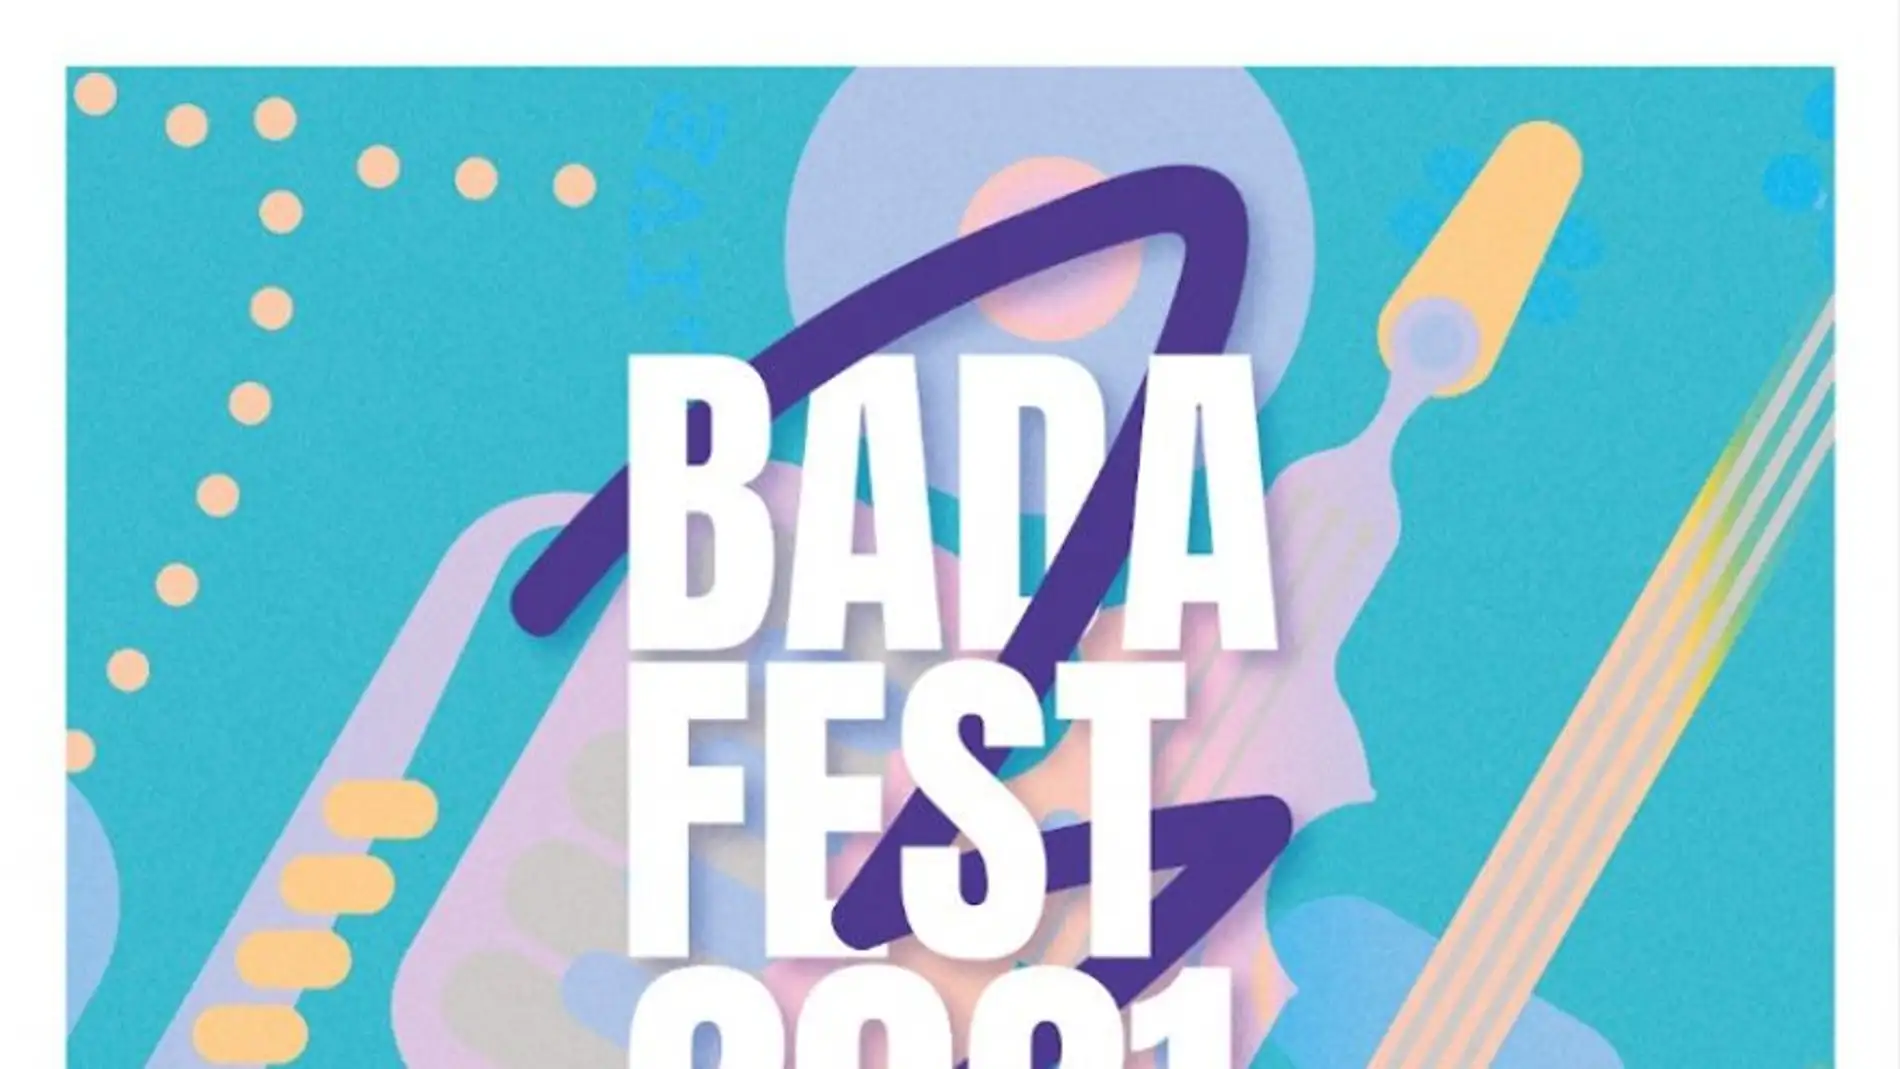 Las formaciones ganadoras del Festival Badafest actuarán este viernes en el Palacio de Congresos de Badajoz